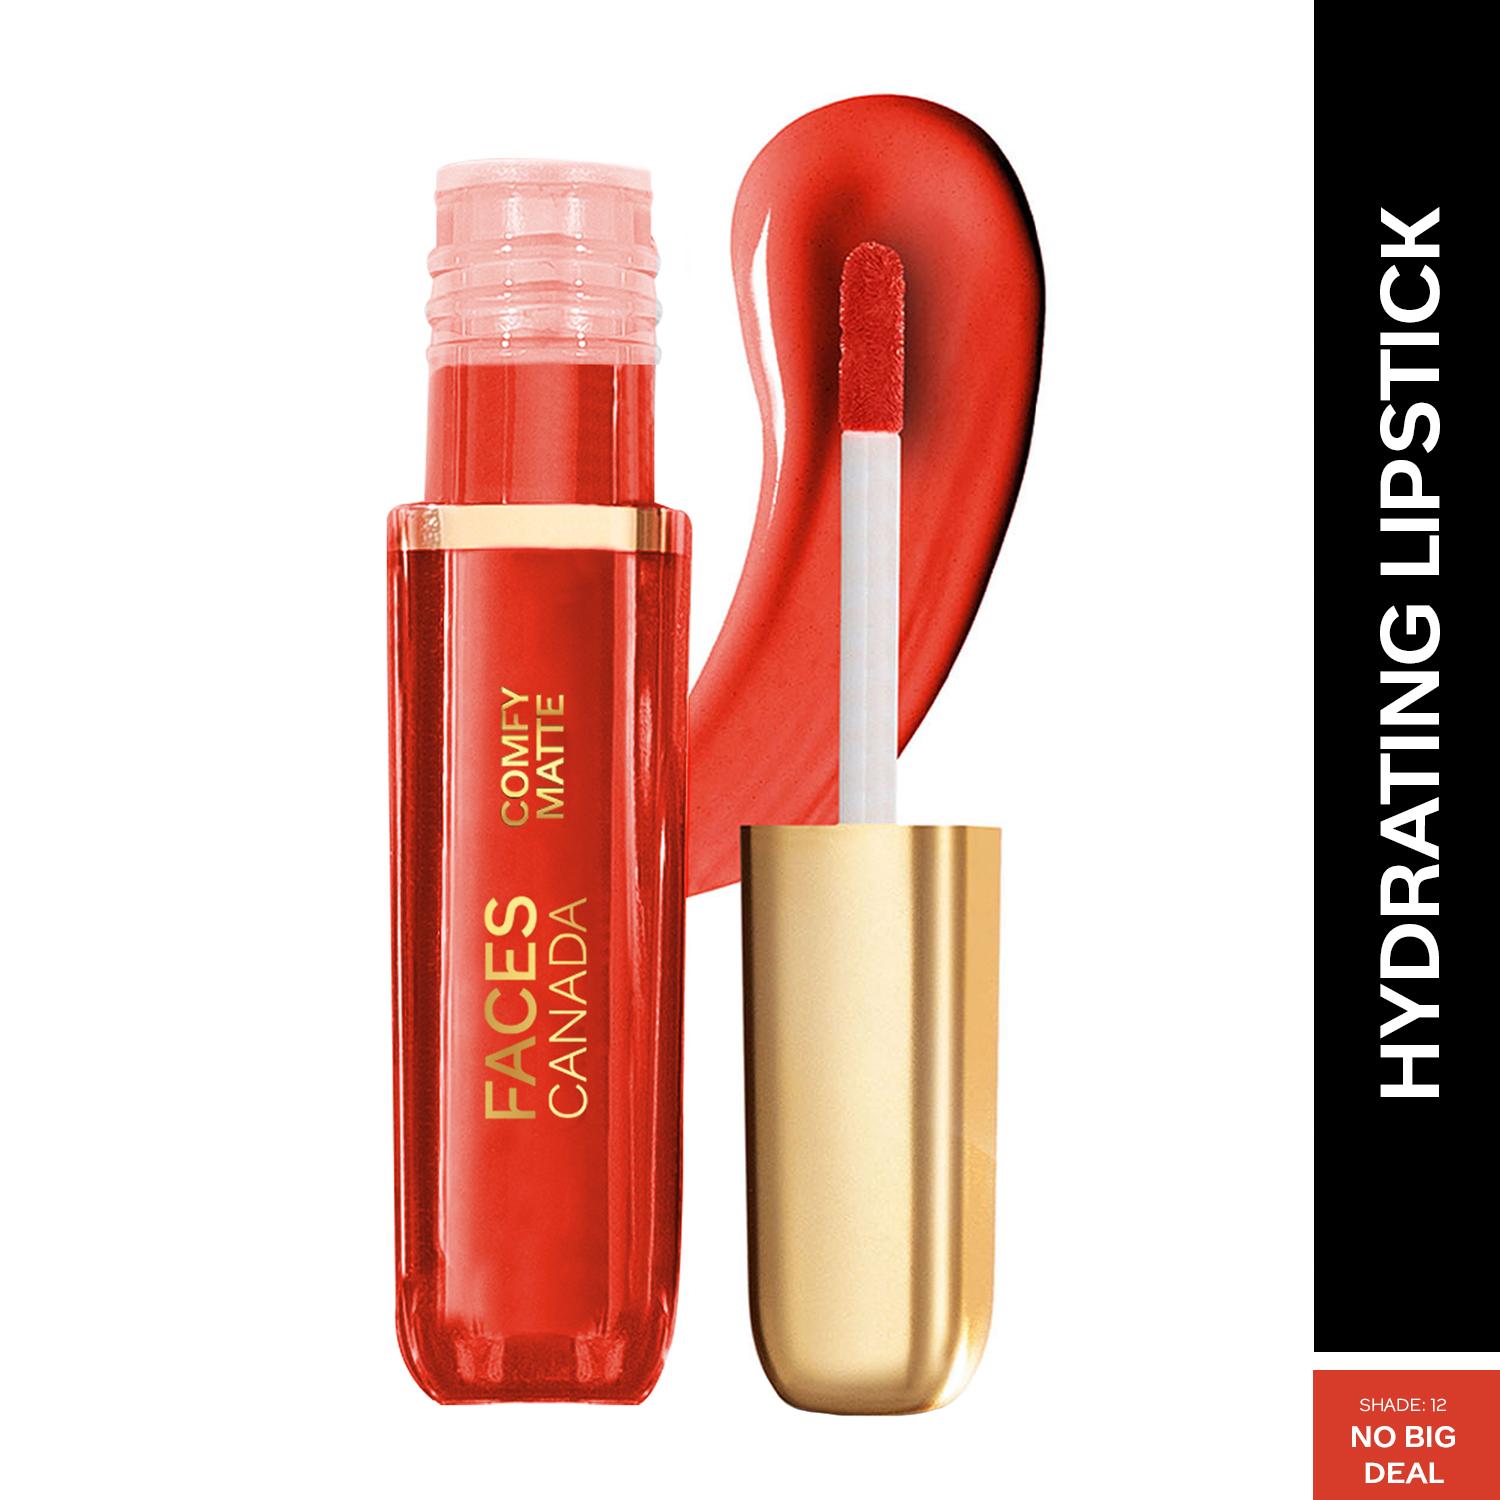 Faces Canada | Faces Canada Comfy Matte Liquid Lipstick, 10HR Stay, No Dryness - No Big Deal 12 (3 ml)